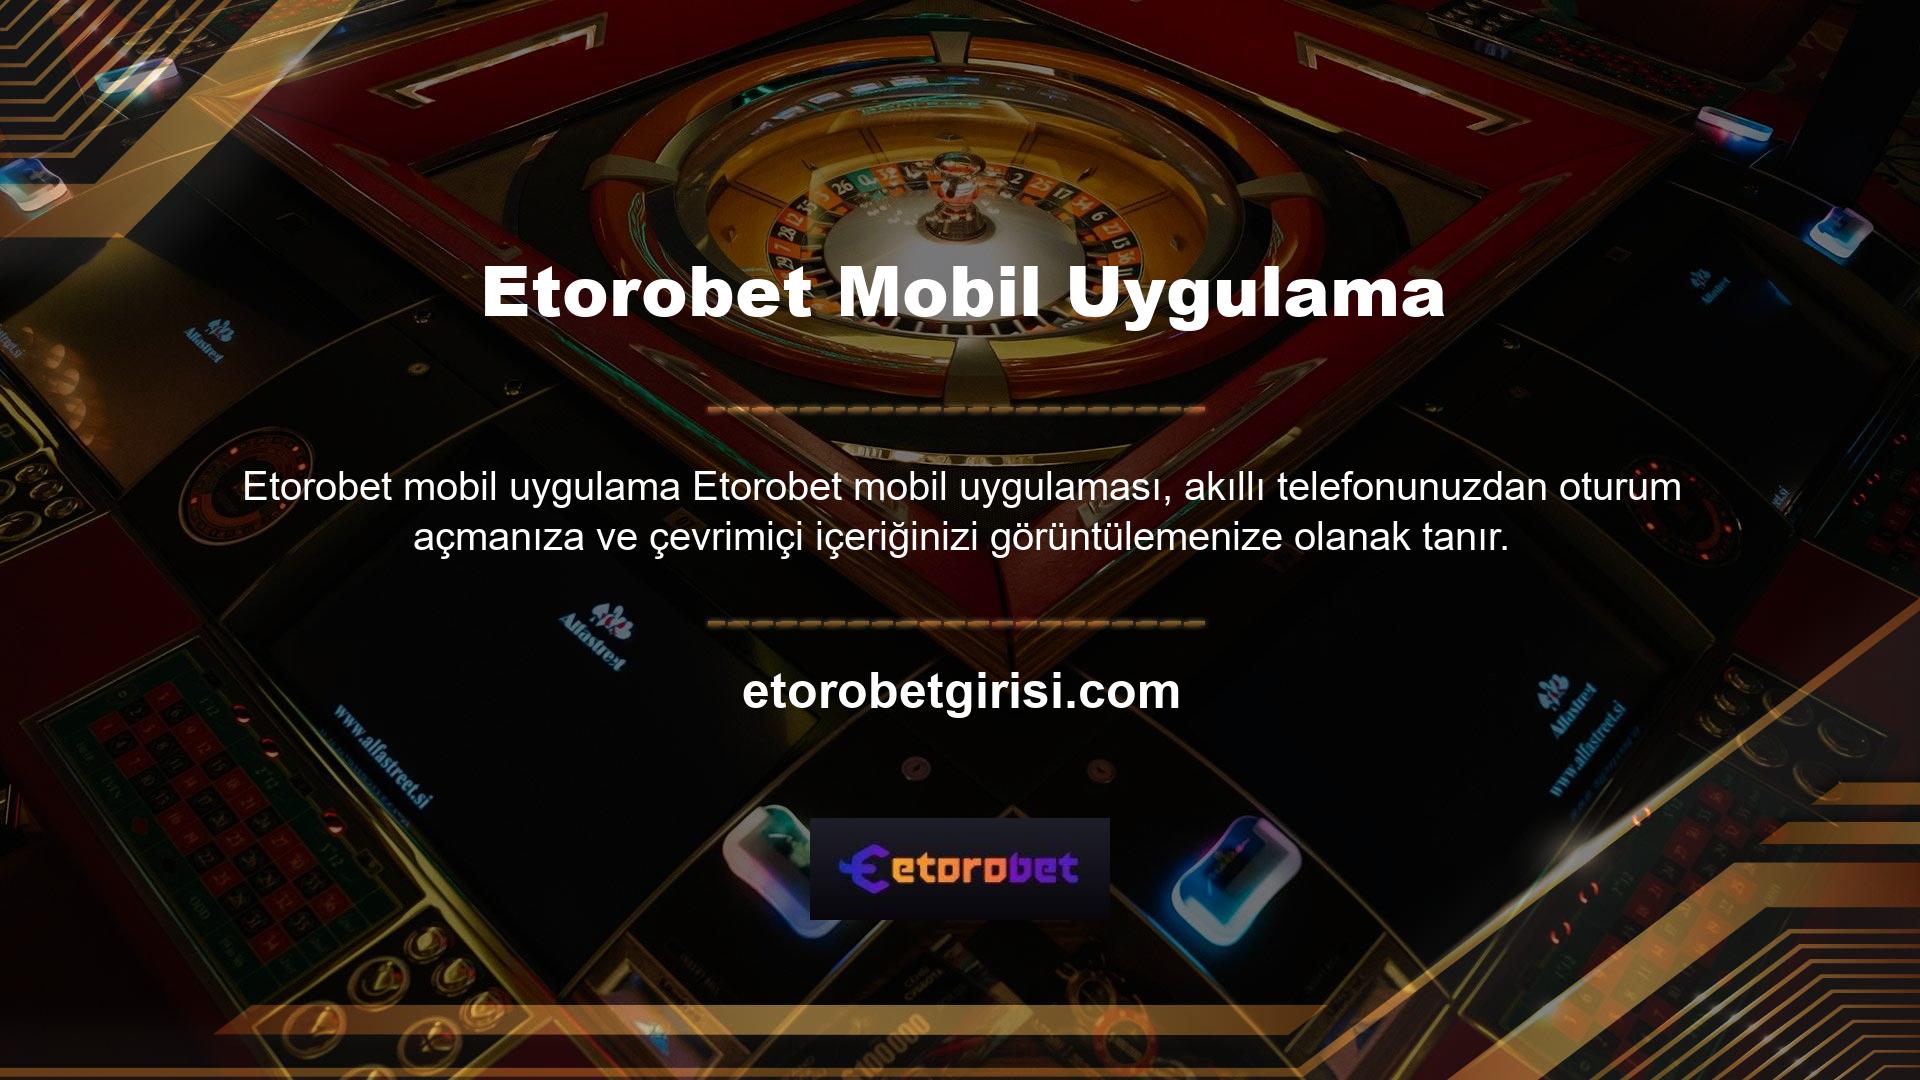 Etorobet uygulamasını bir Apple Store veya Play Store'dan indirebilirsiniz